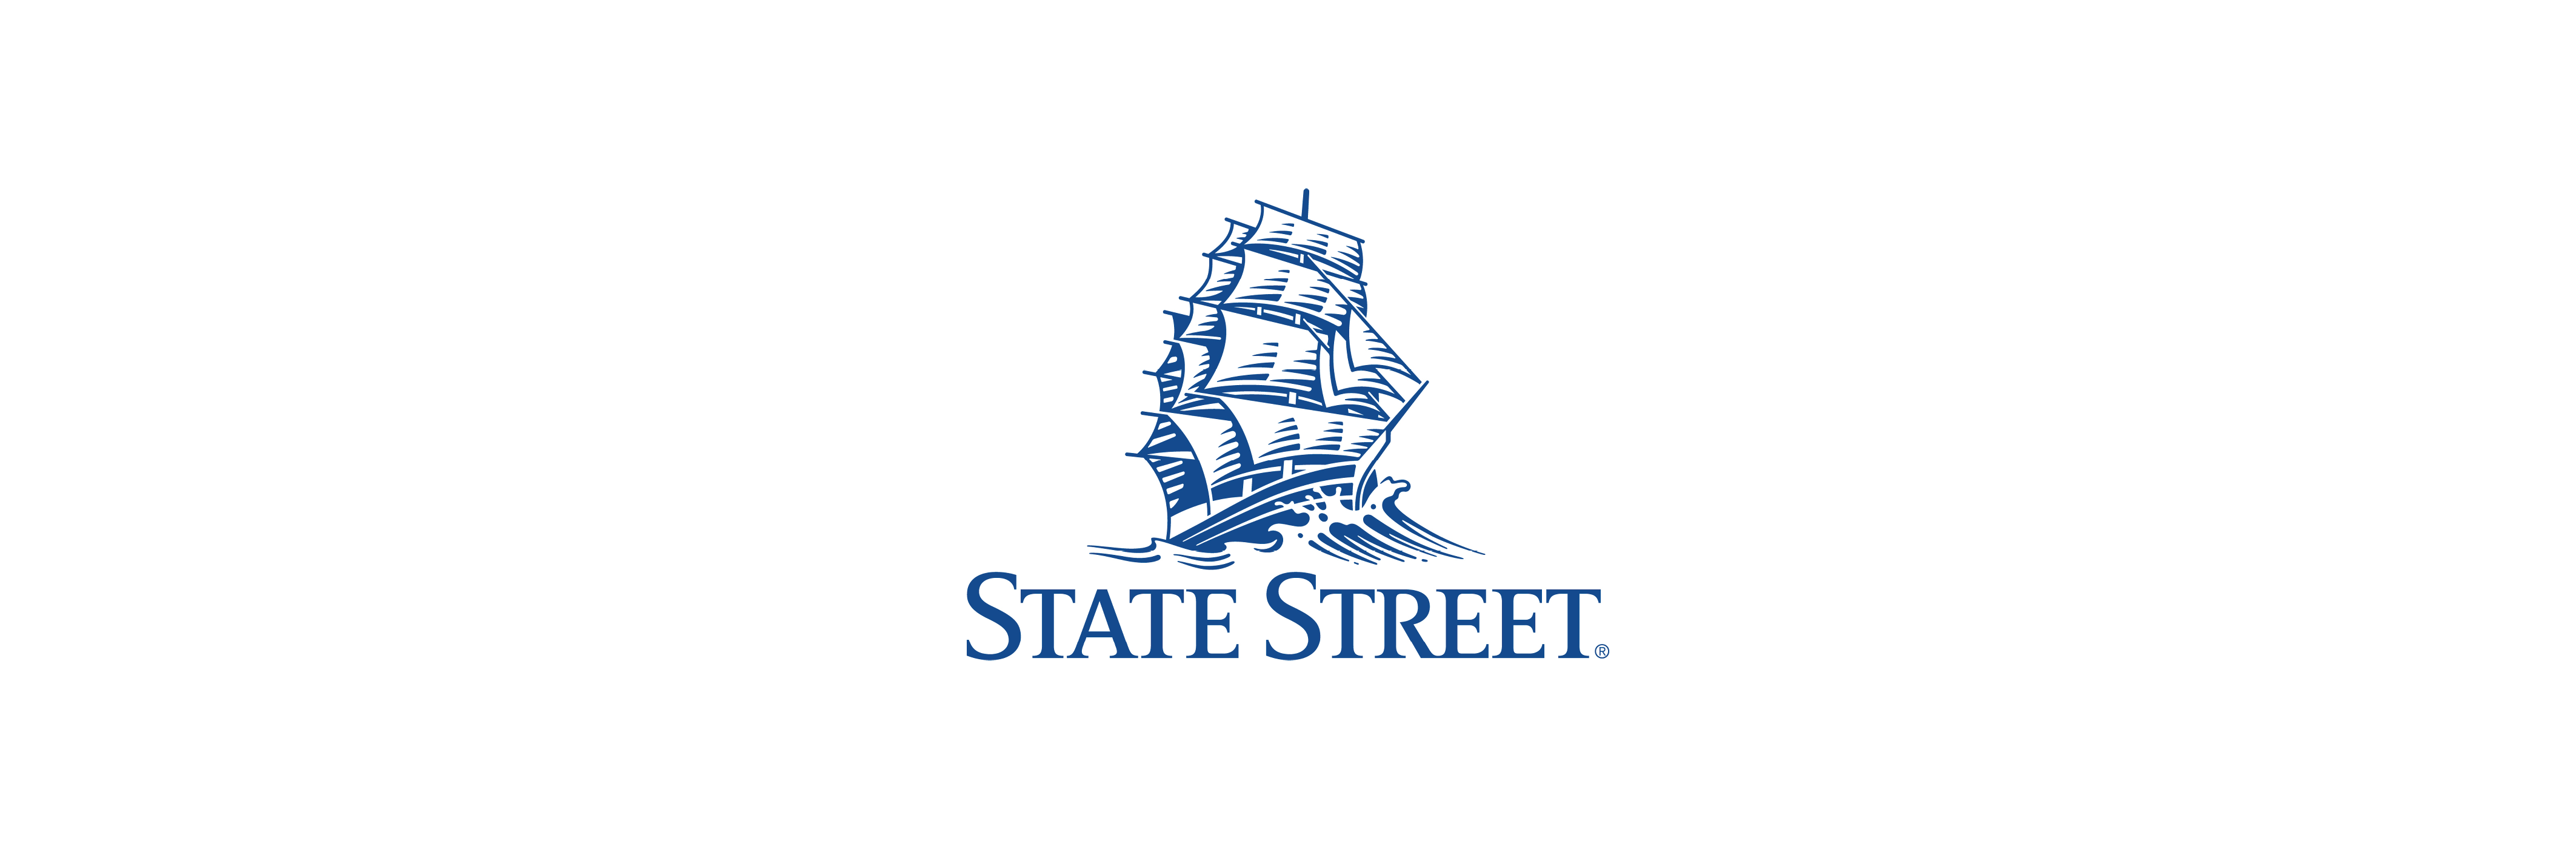 State Street Logo - State Street